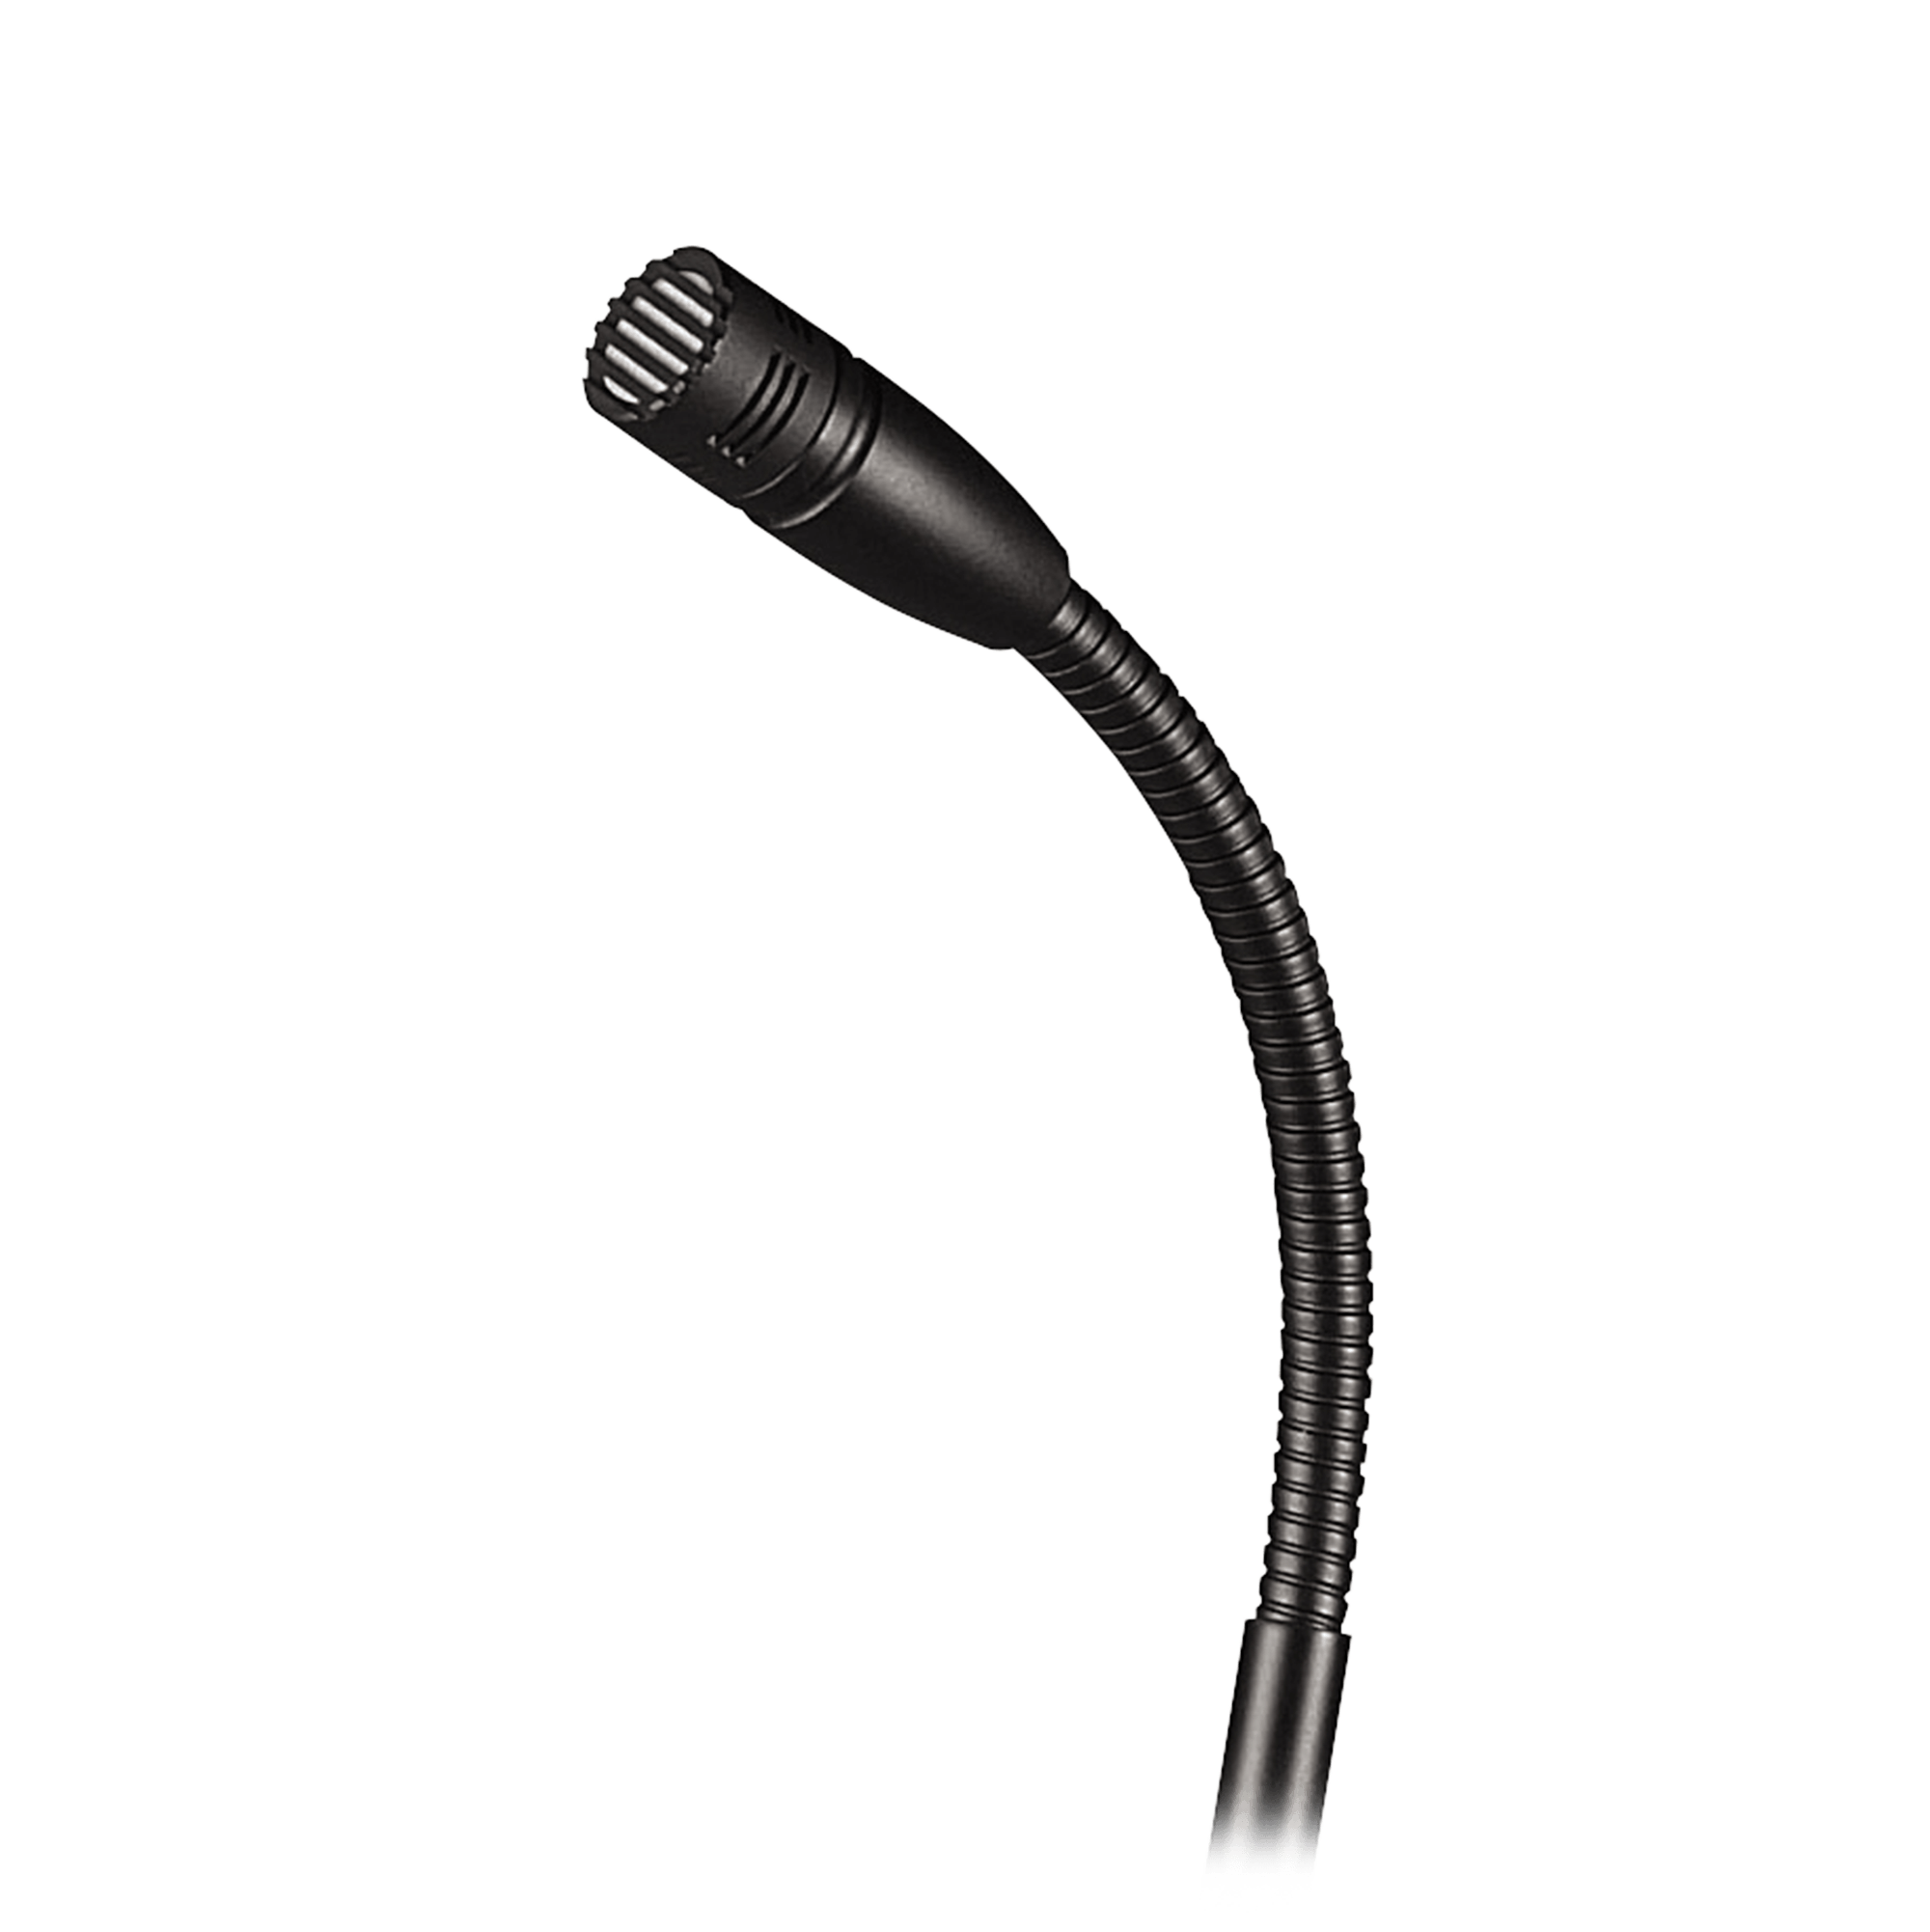 Professional　Inc　U857Q　Condenser　Professional　Microphone　Design,　Cardioid　Audio　Audio　Design,　Inc